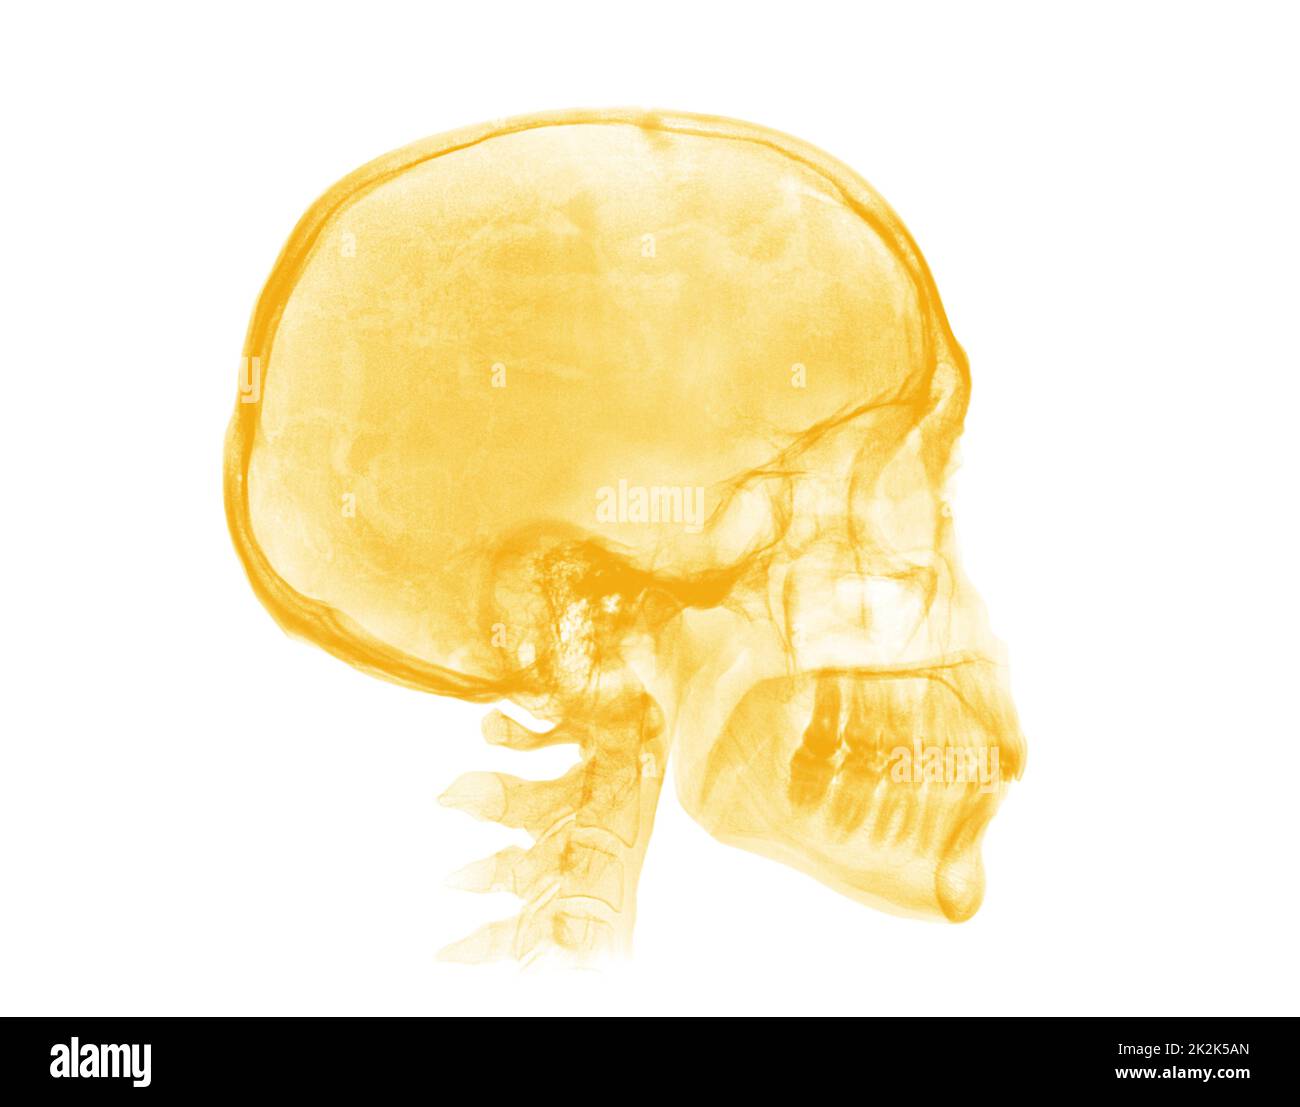 Cranio umano. Immagine radiografica gialla su sfondo bianco Foto Stock